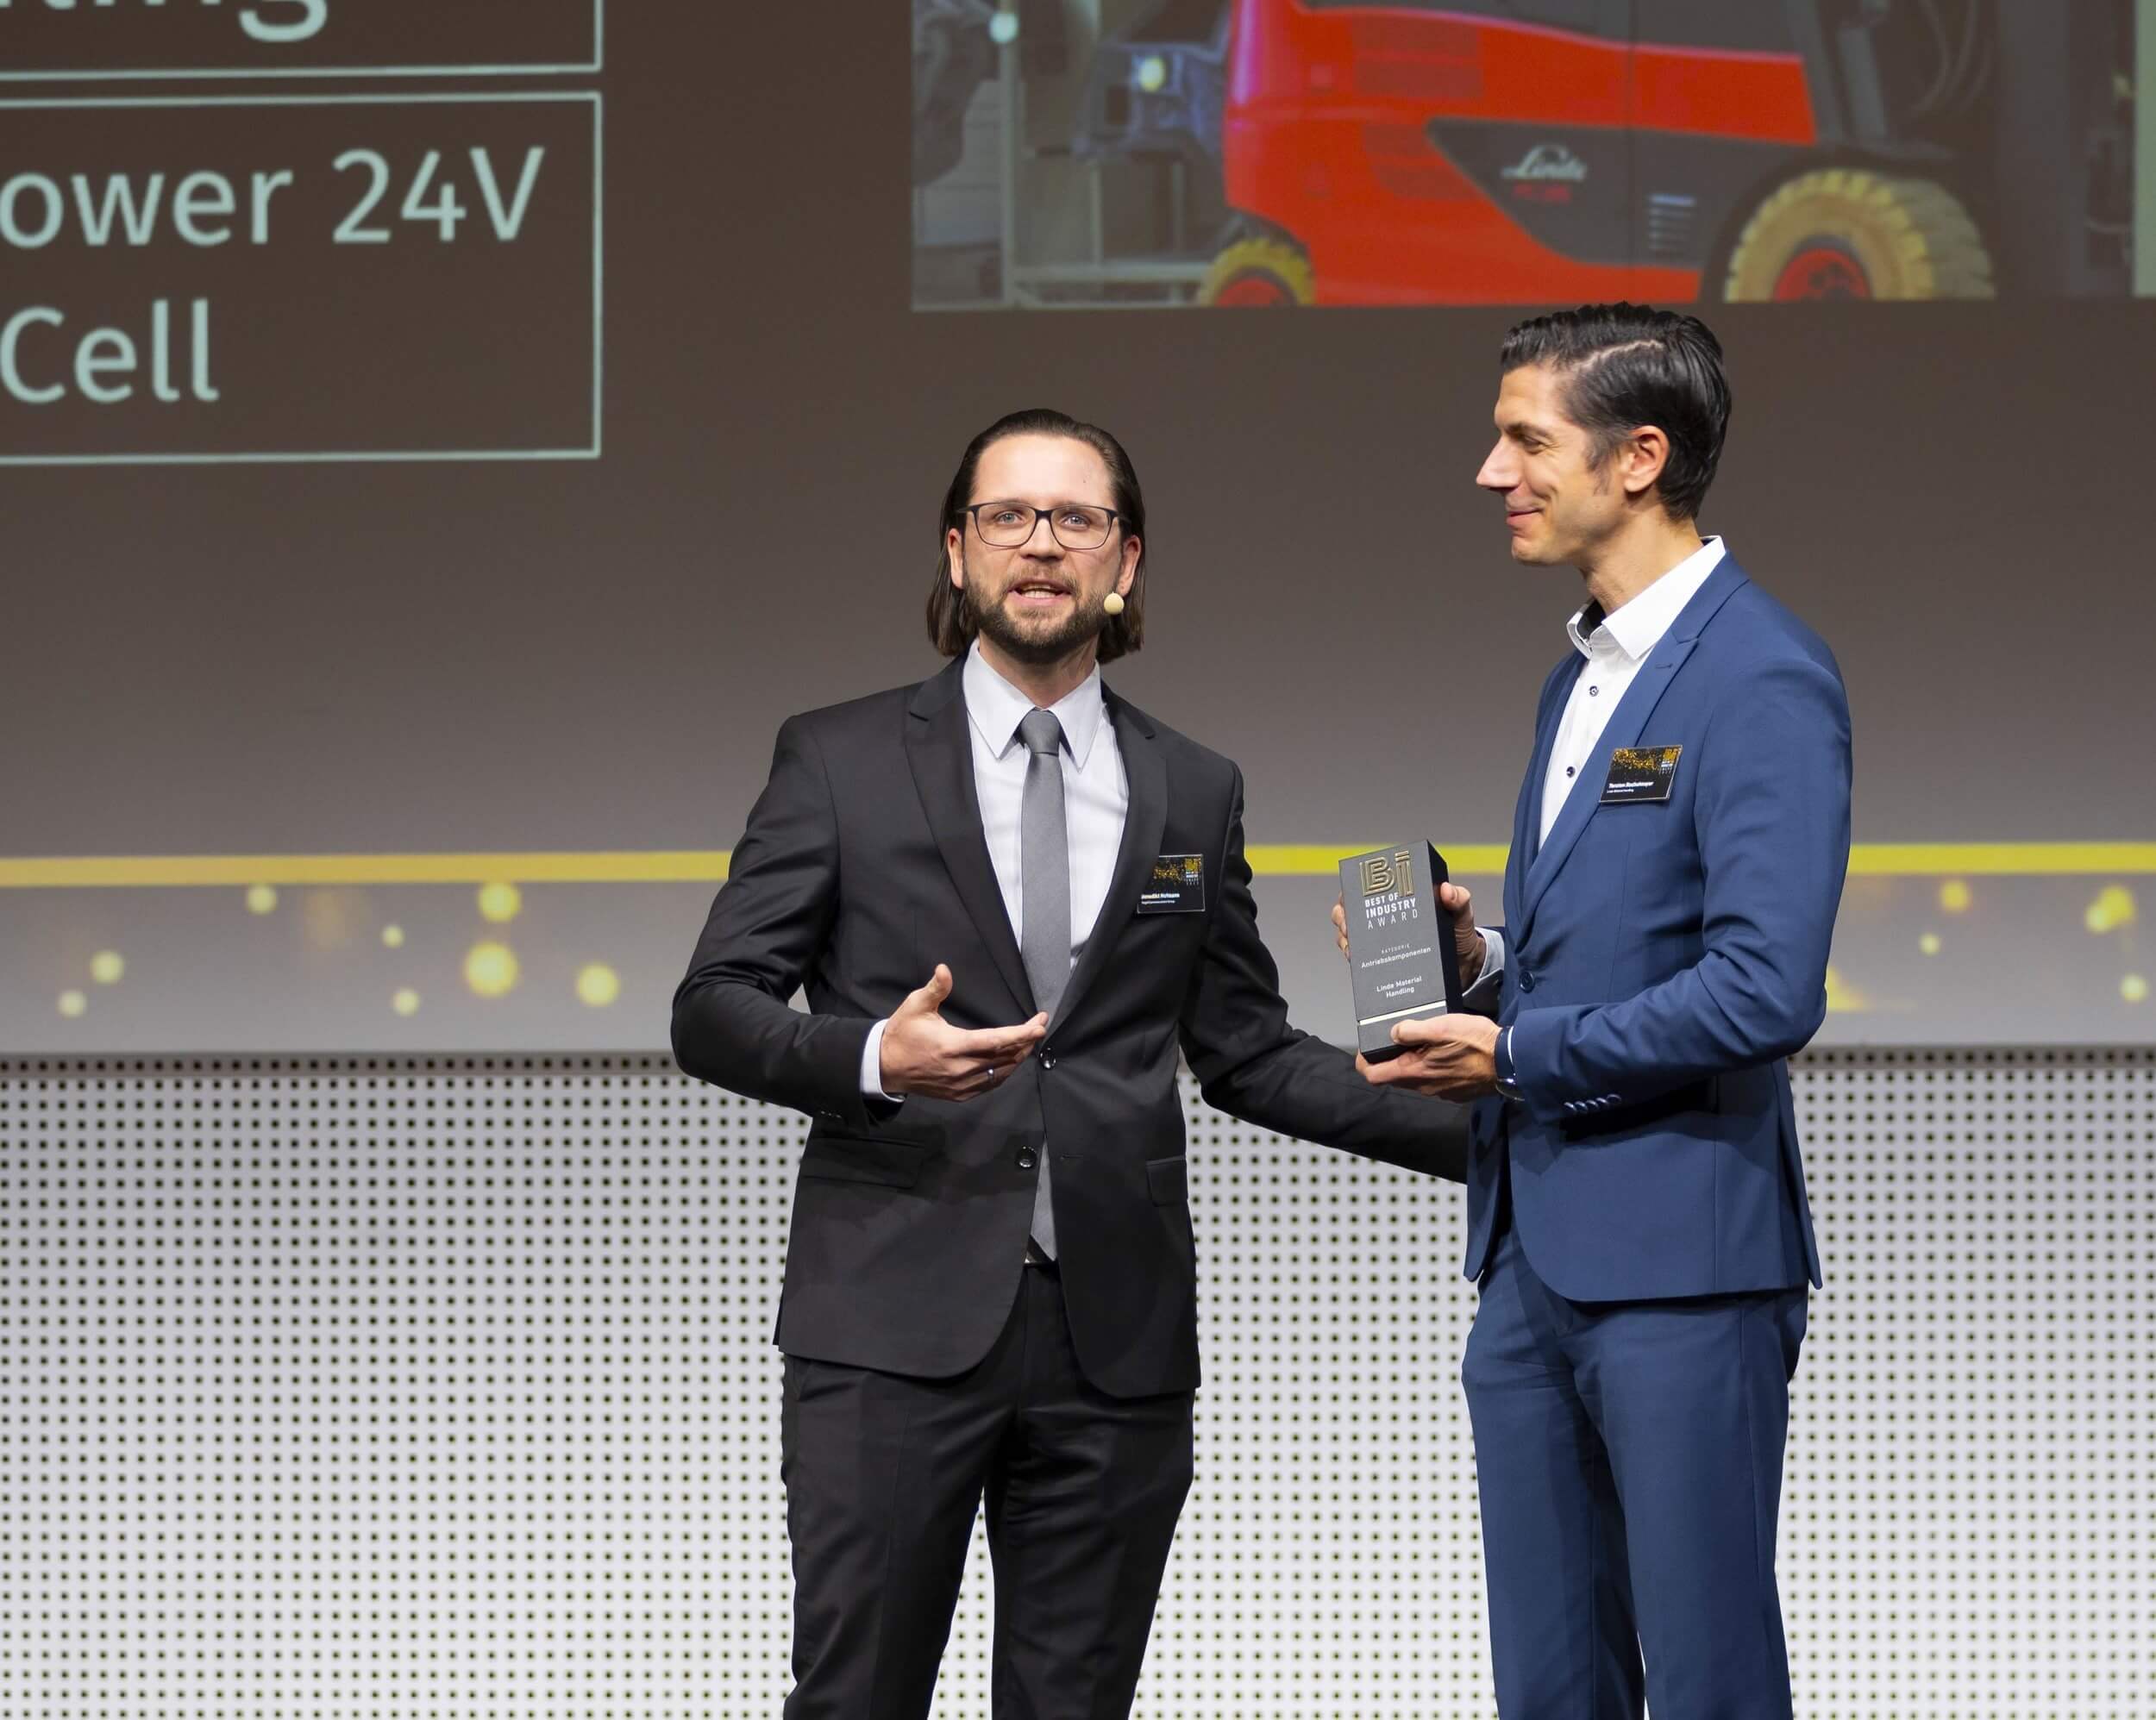 Prix Best of Industry pour la pile à combustible Linde HyPower 24V